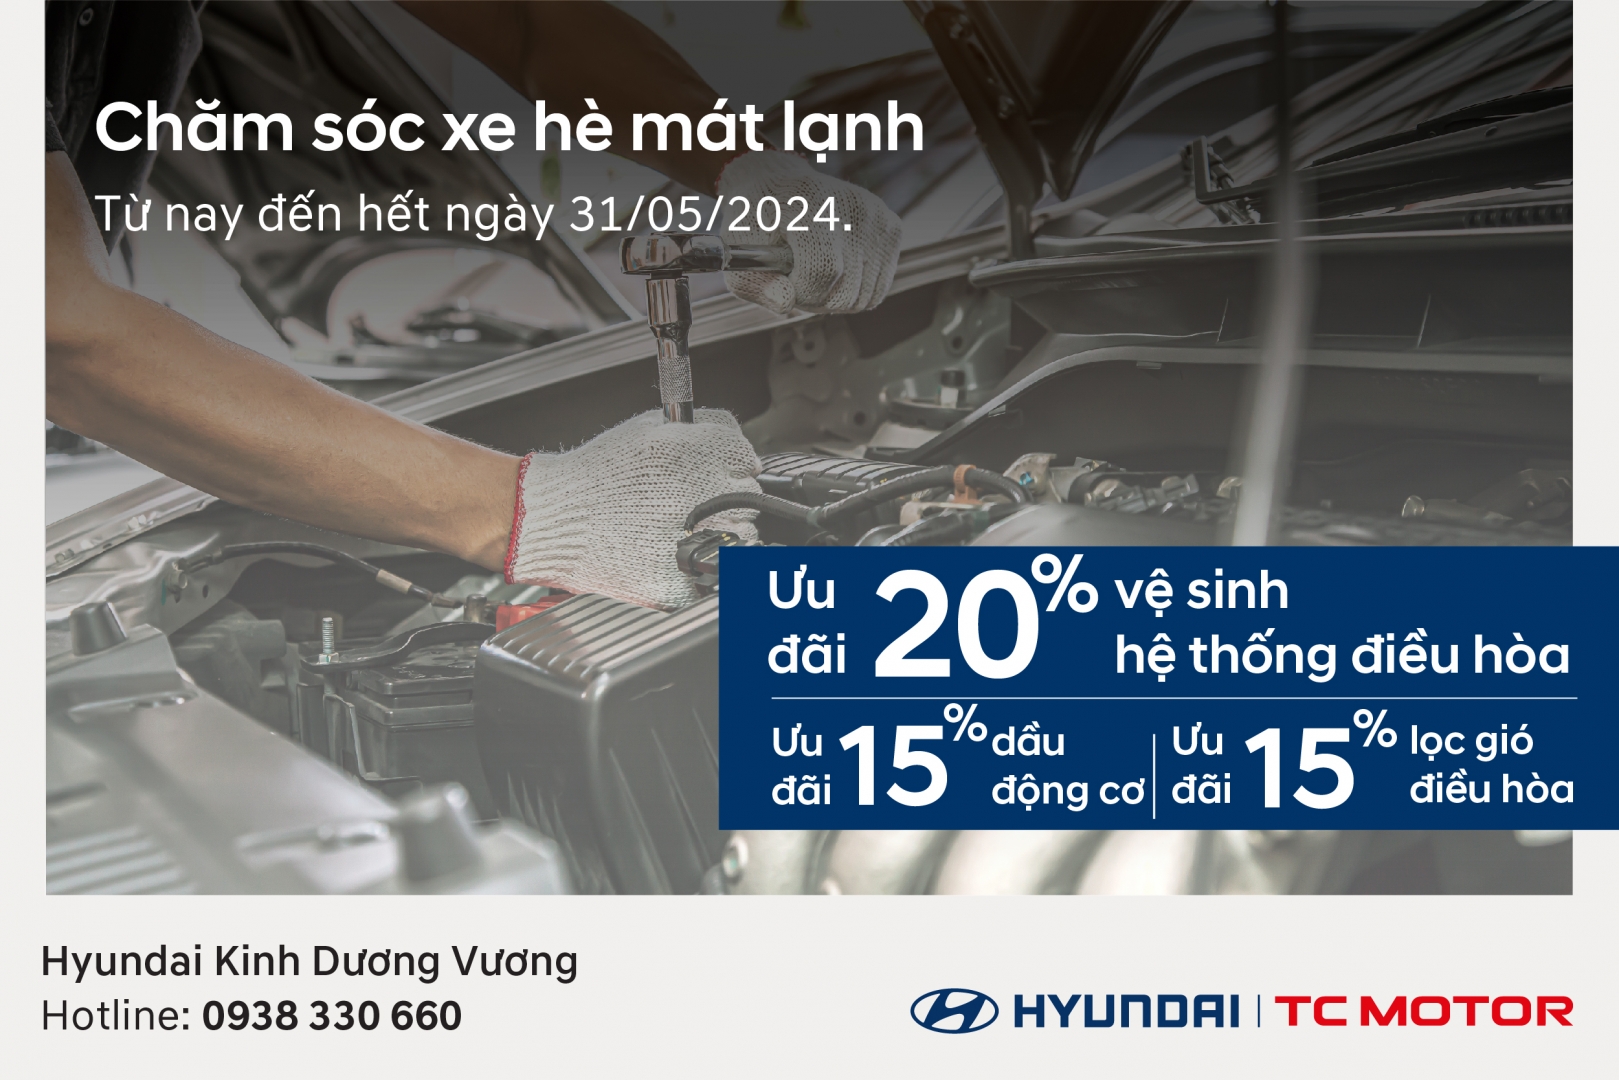 Cùng Hyundai Kinh Dương Vương nhận ưu đãi với chương trình  Chăm Sóc Xe Hè Mát Lạnh 